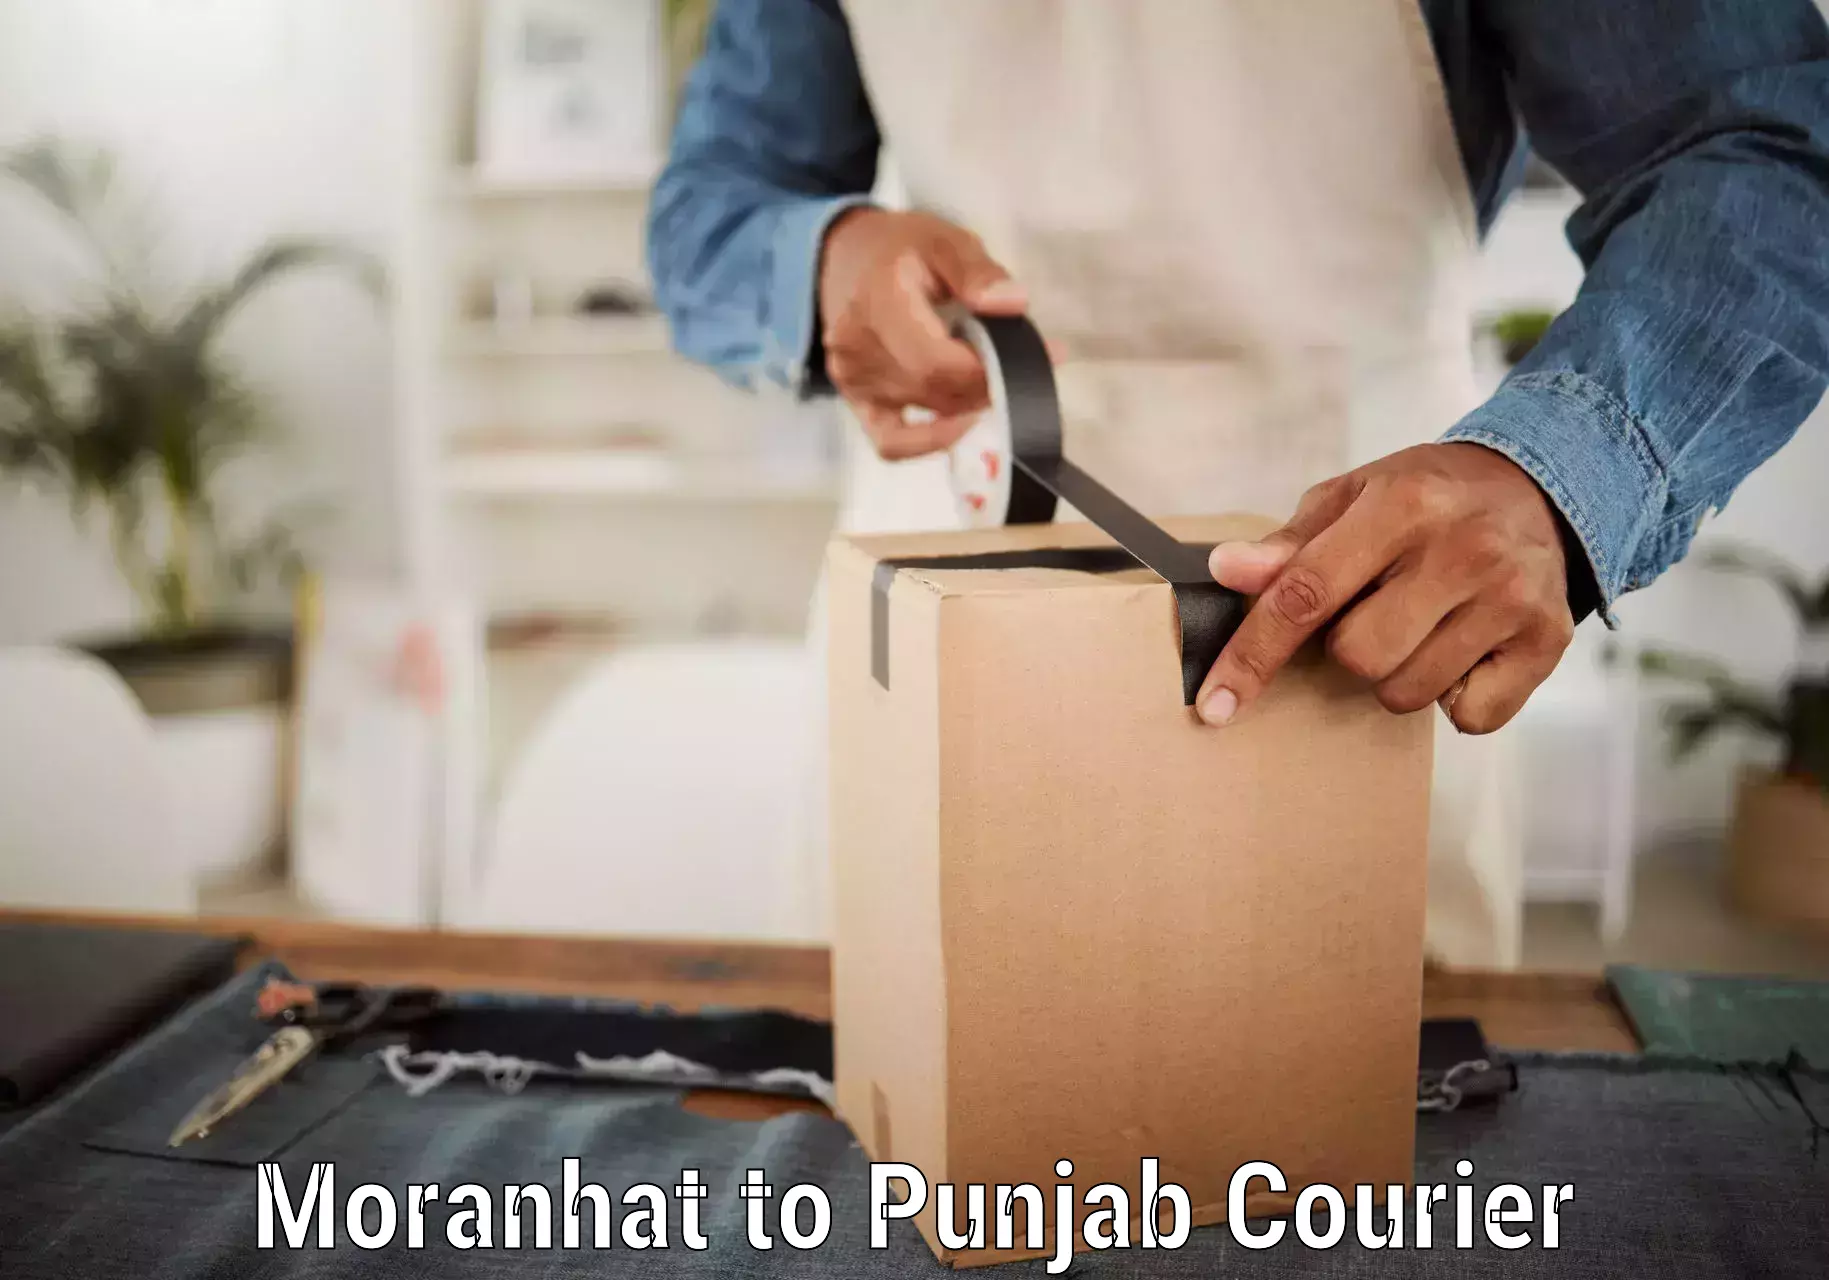 Emergency parcel delivery Moranhat to Punjab